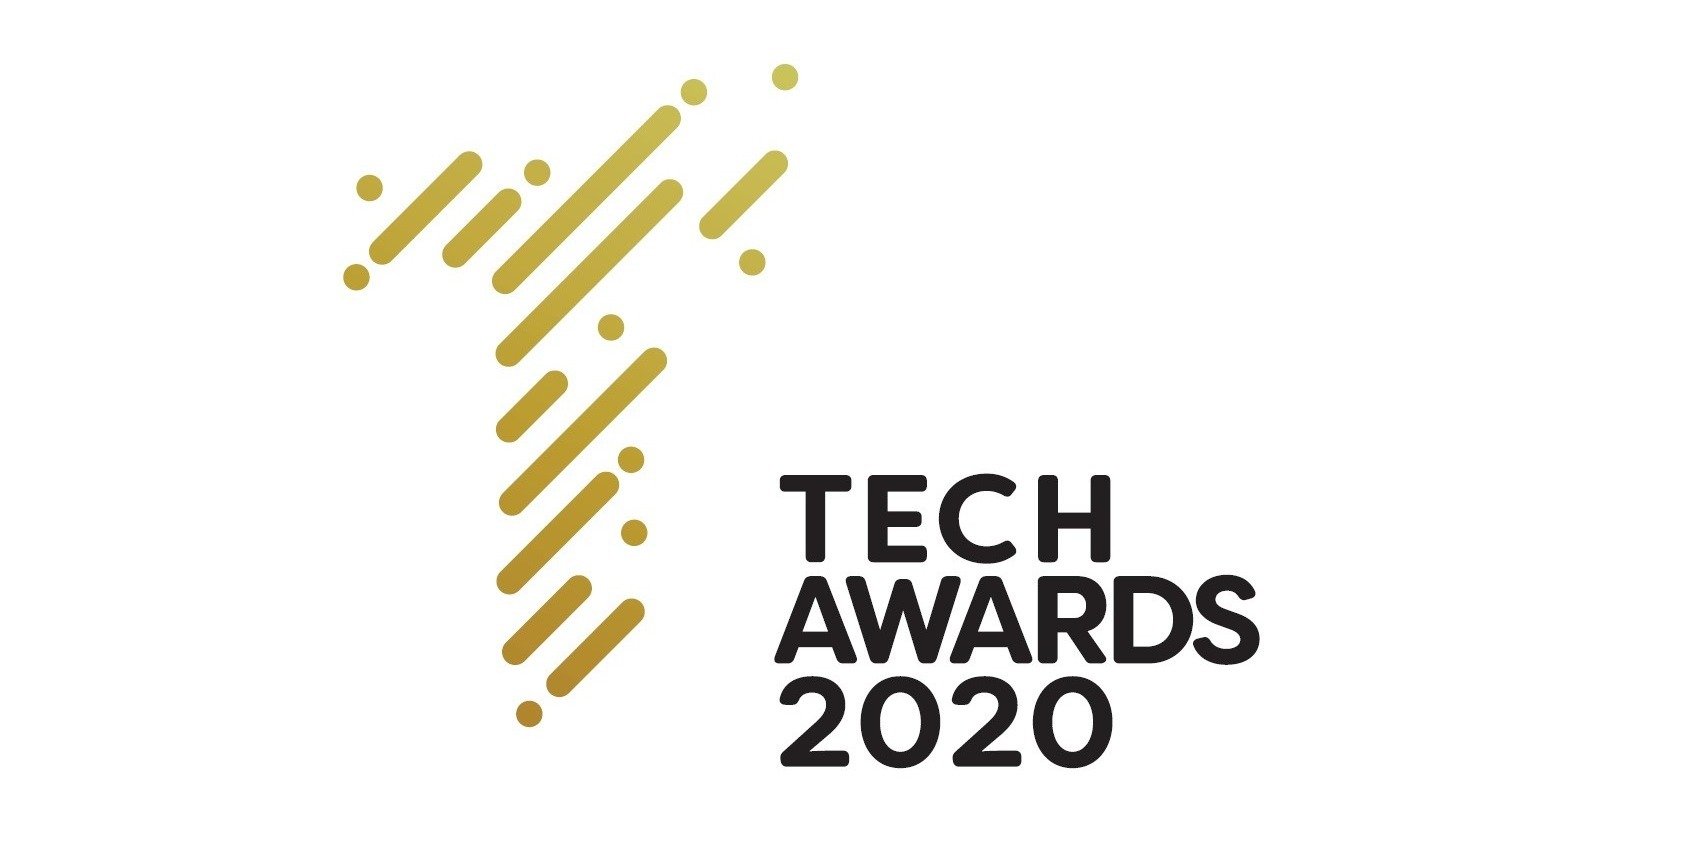 OPPO marką roku w plebiscycie Tech Awards 2020